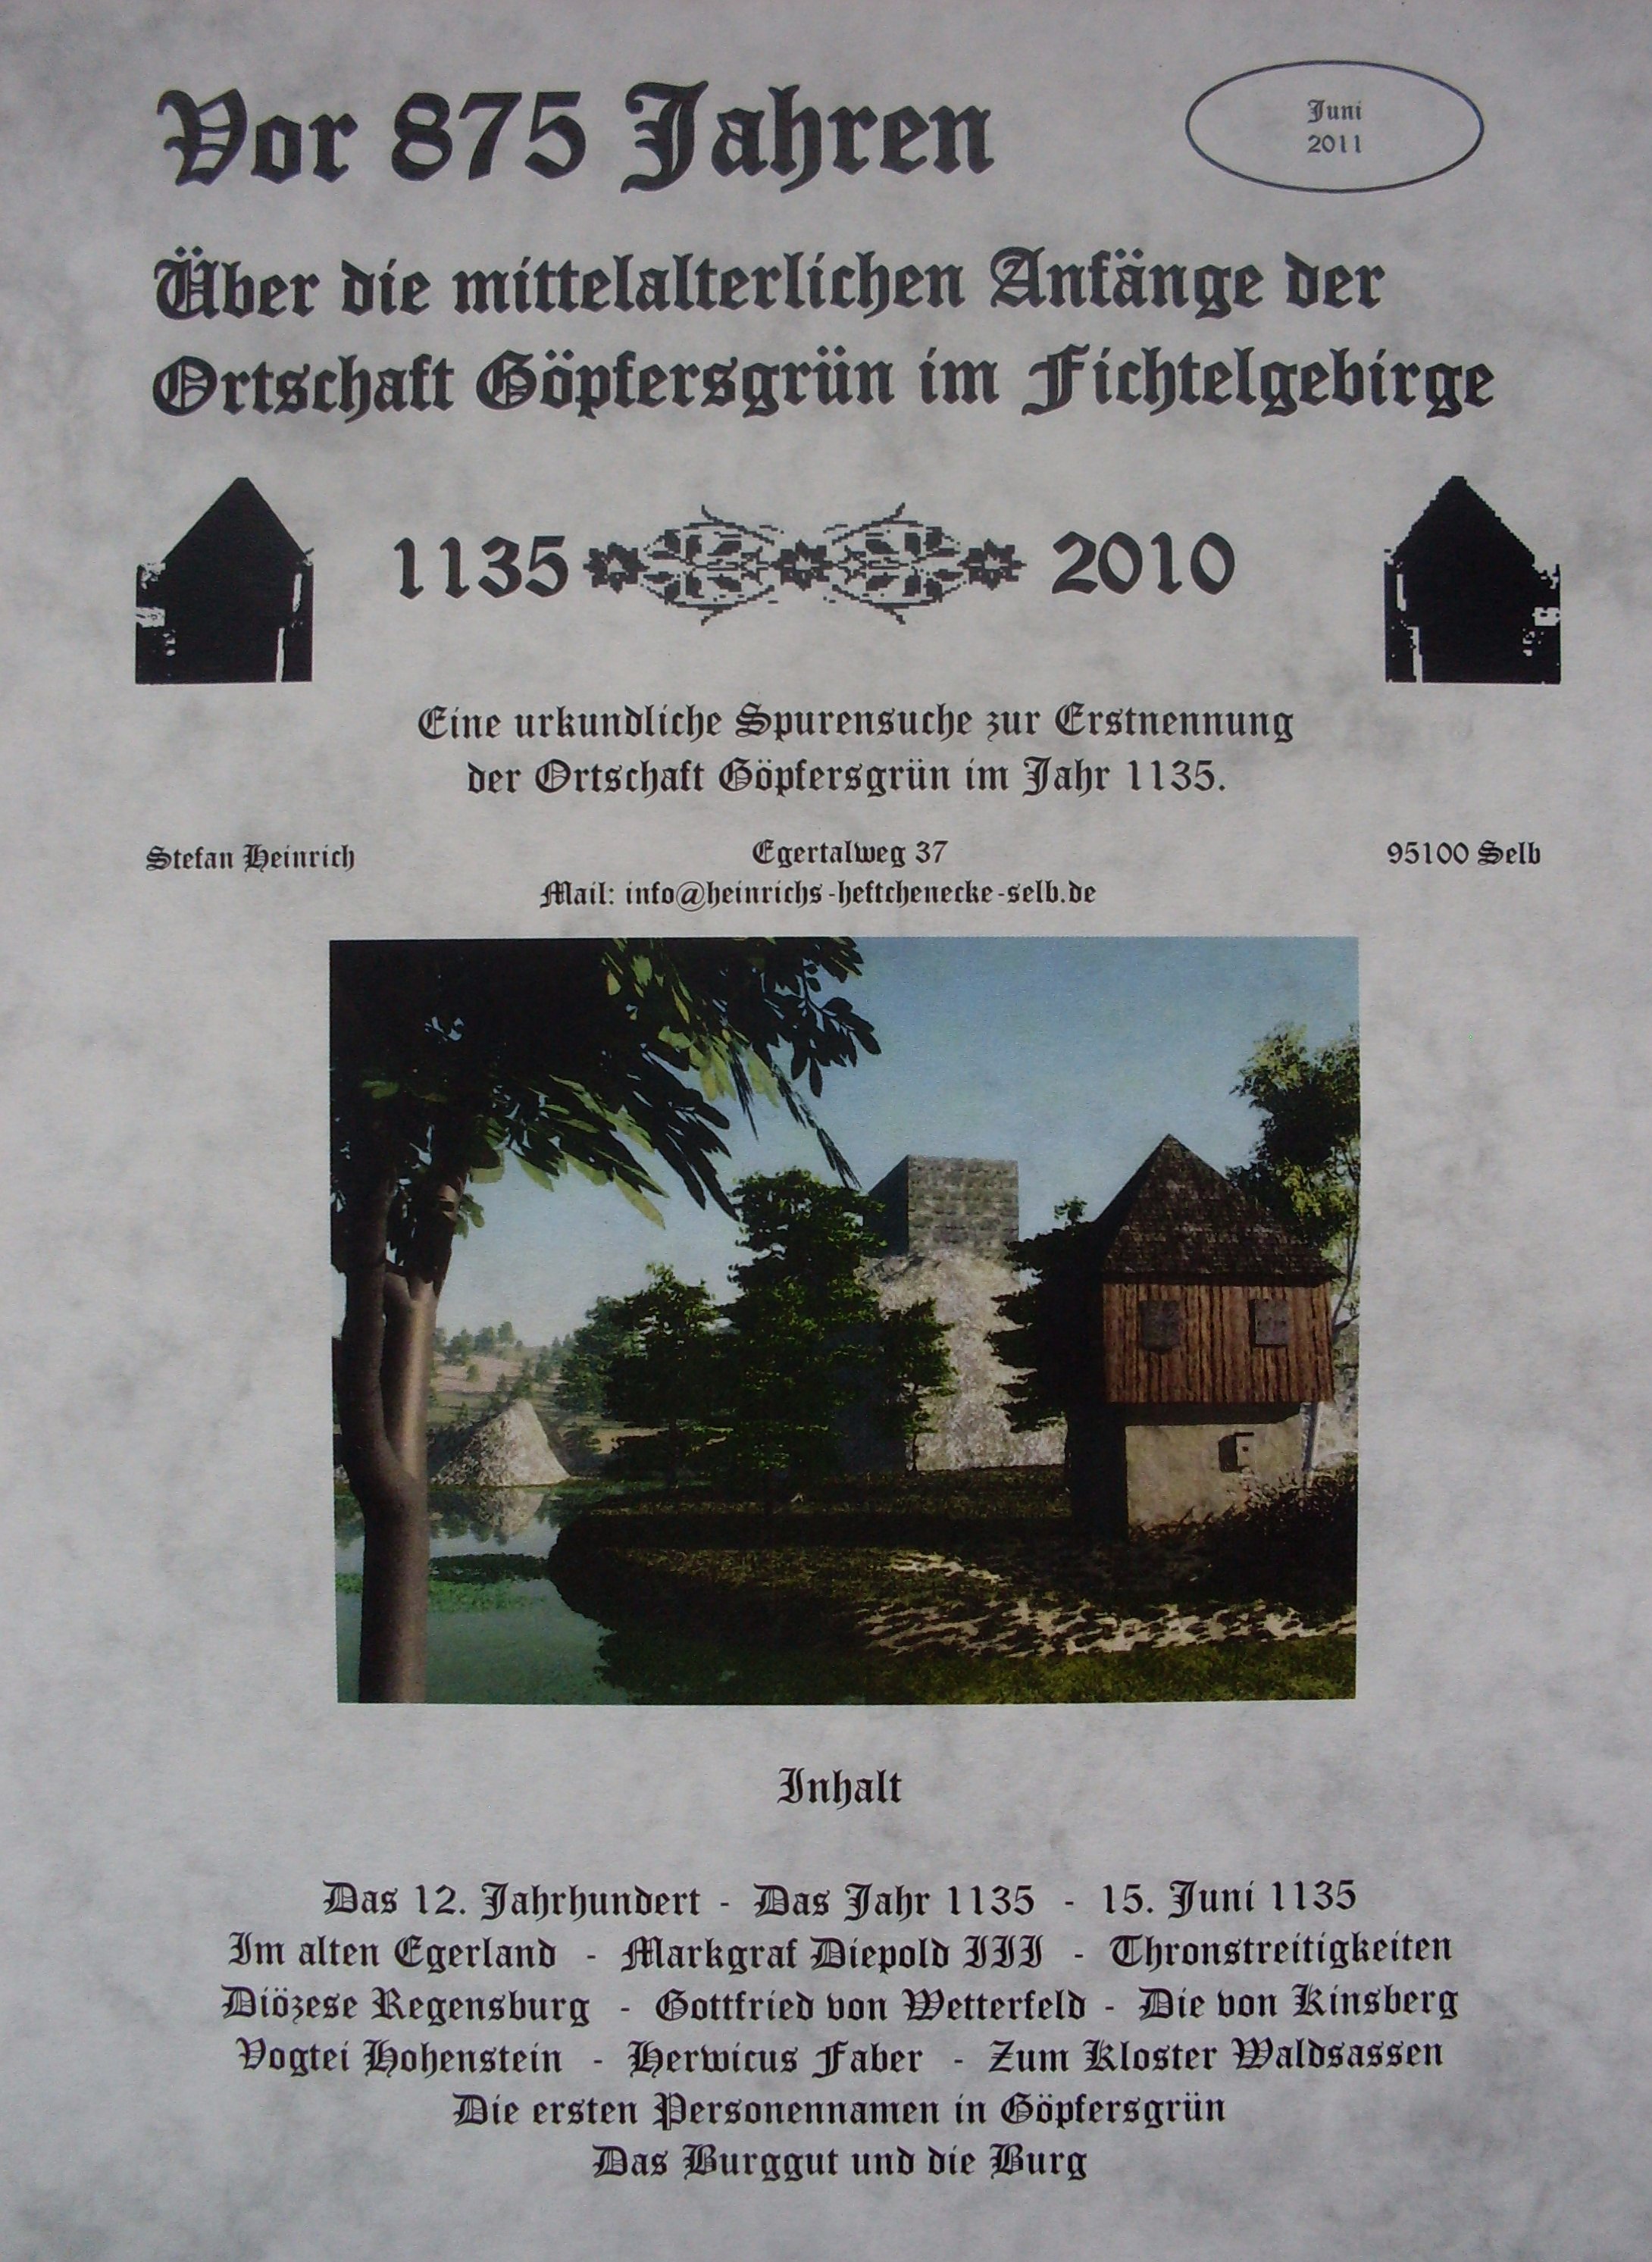 1135 - 2010: Die Anfänge von Göpfersgrün im Fichtelgebirge